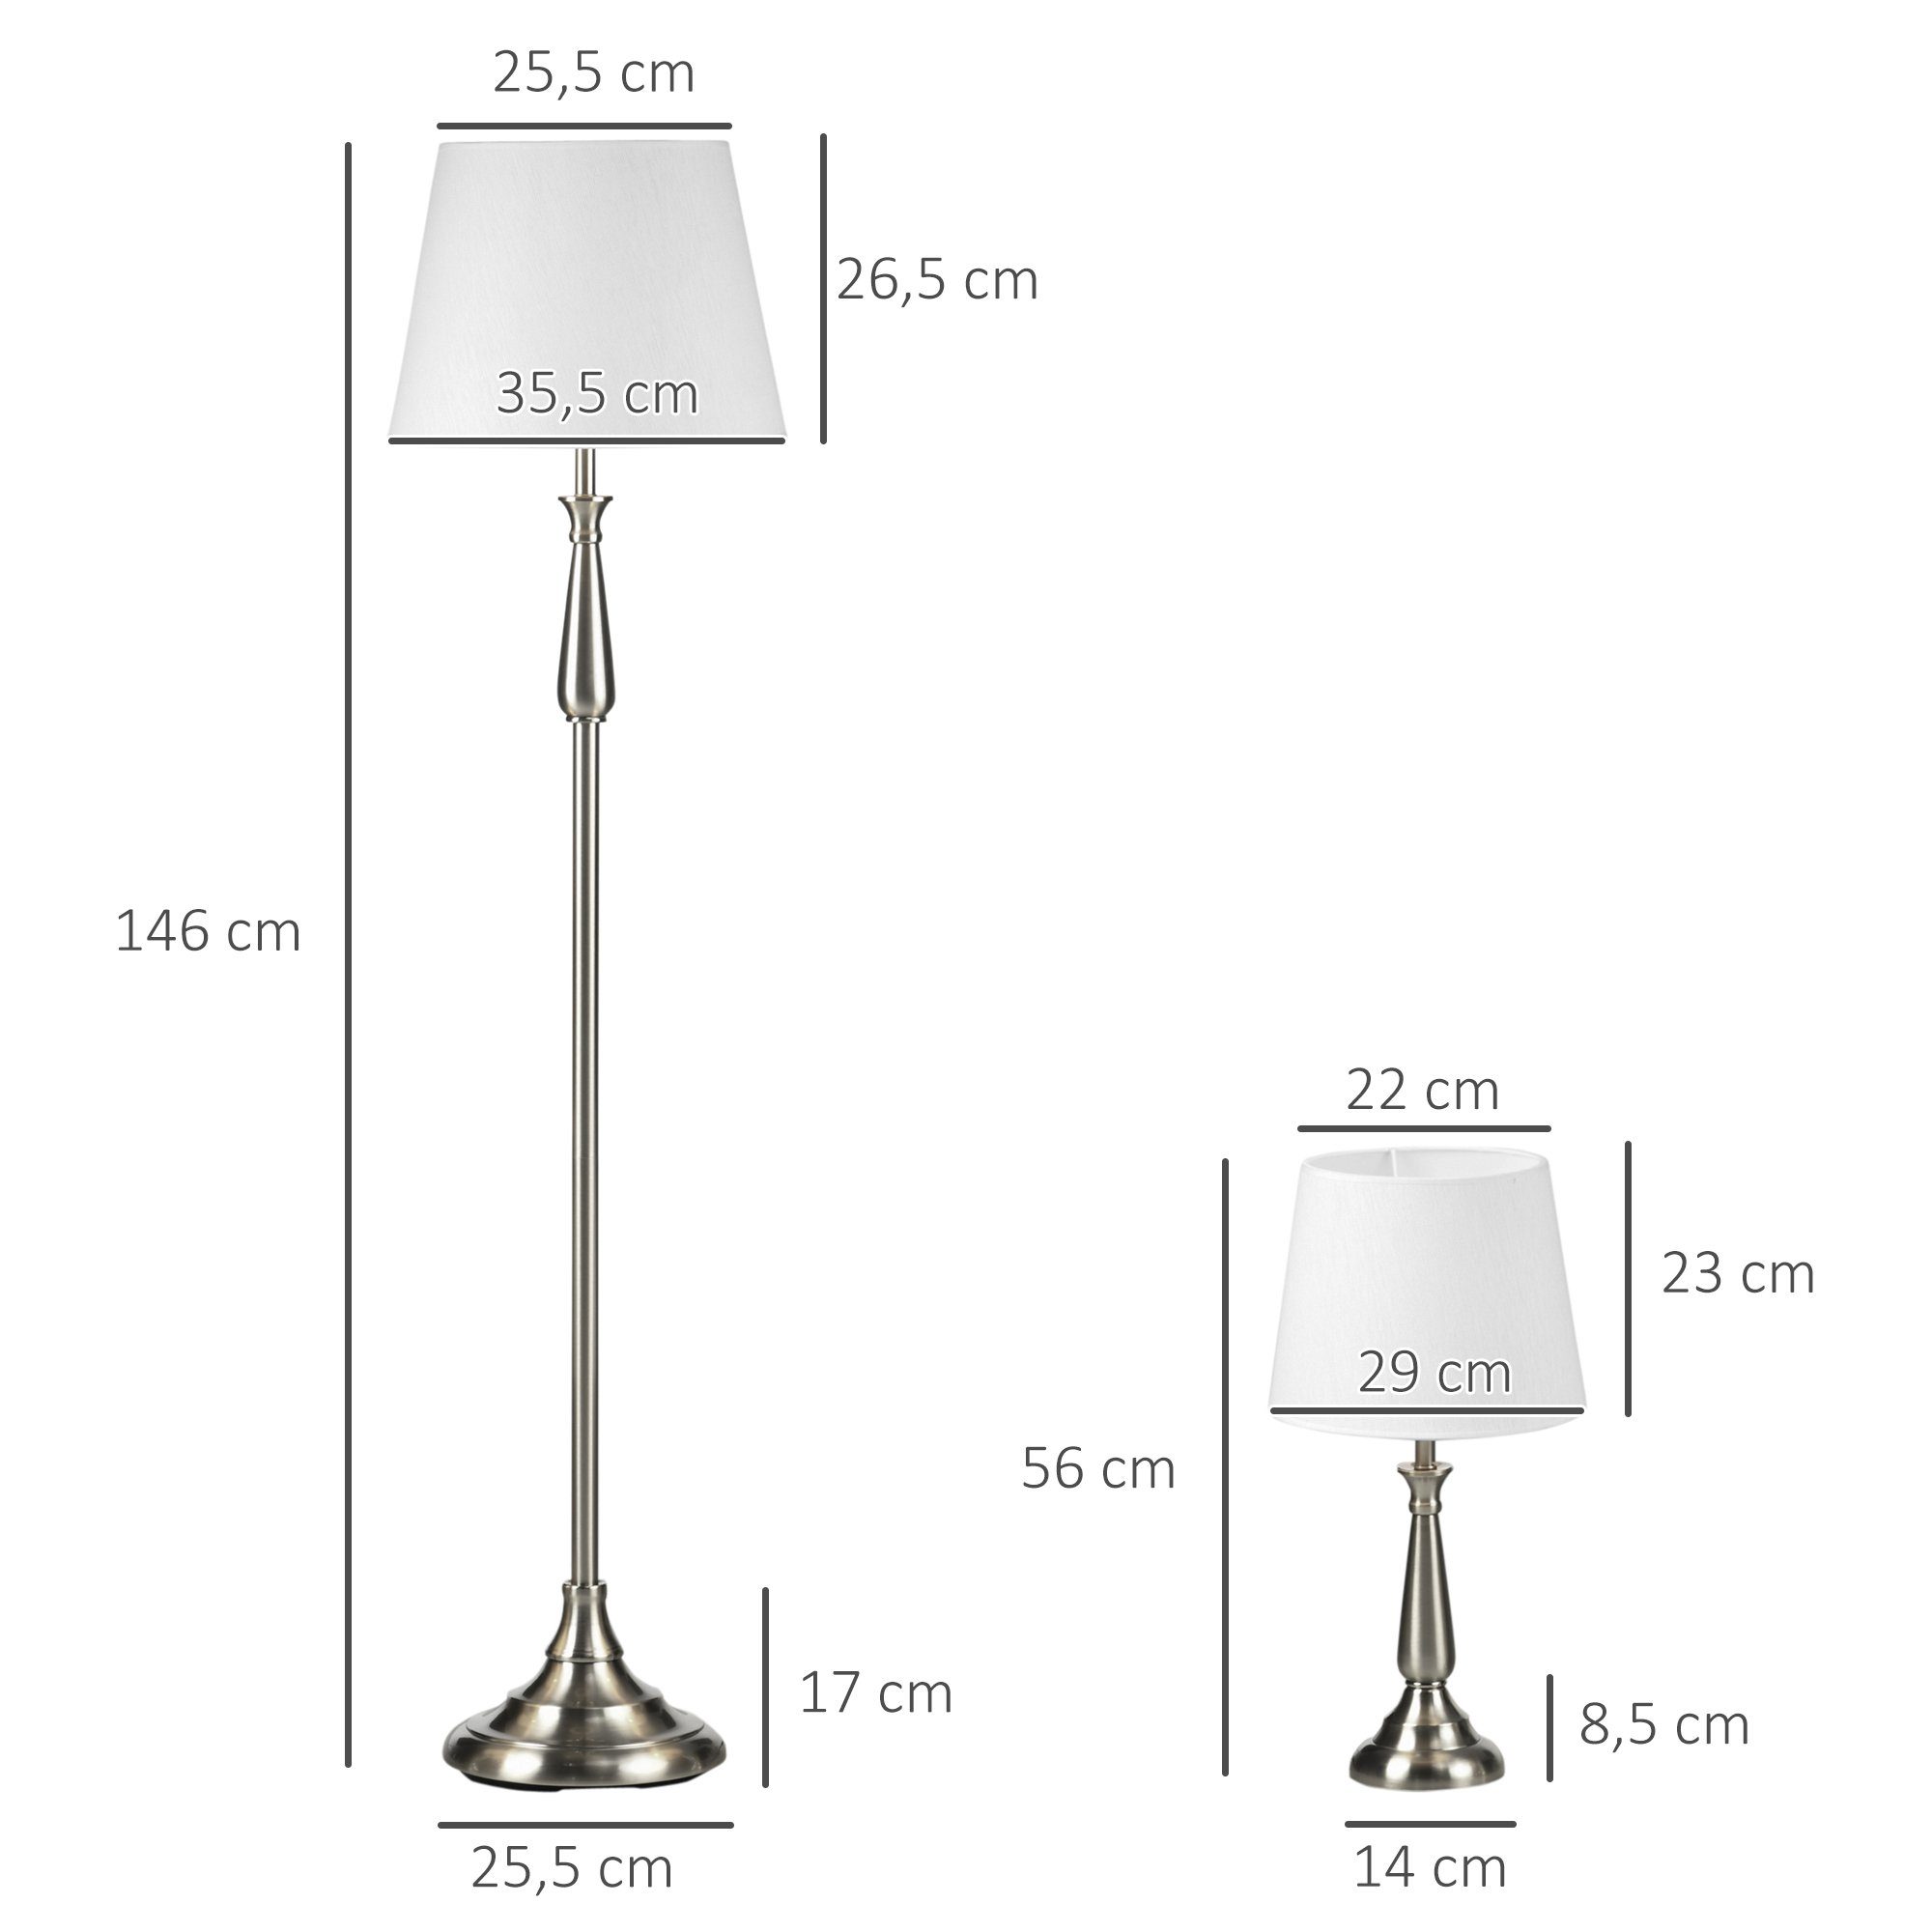 HOMCOM Stehlampe 2 Tischleuchten, Ohne Ein-,Ausschalter, cm, 146 35.5 x Set 3er Leuchtmittel, 1 Stehleuchte, 35.5x